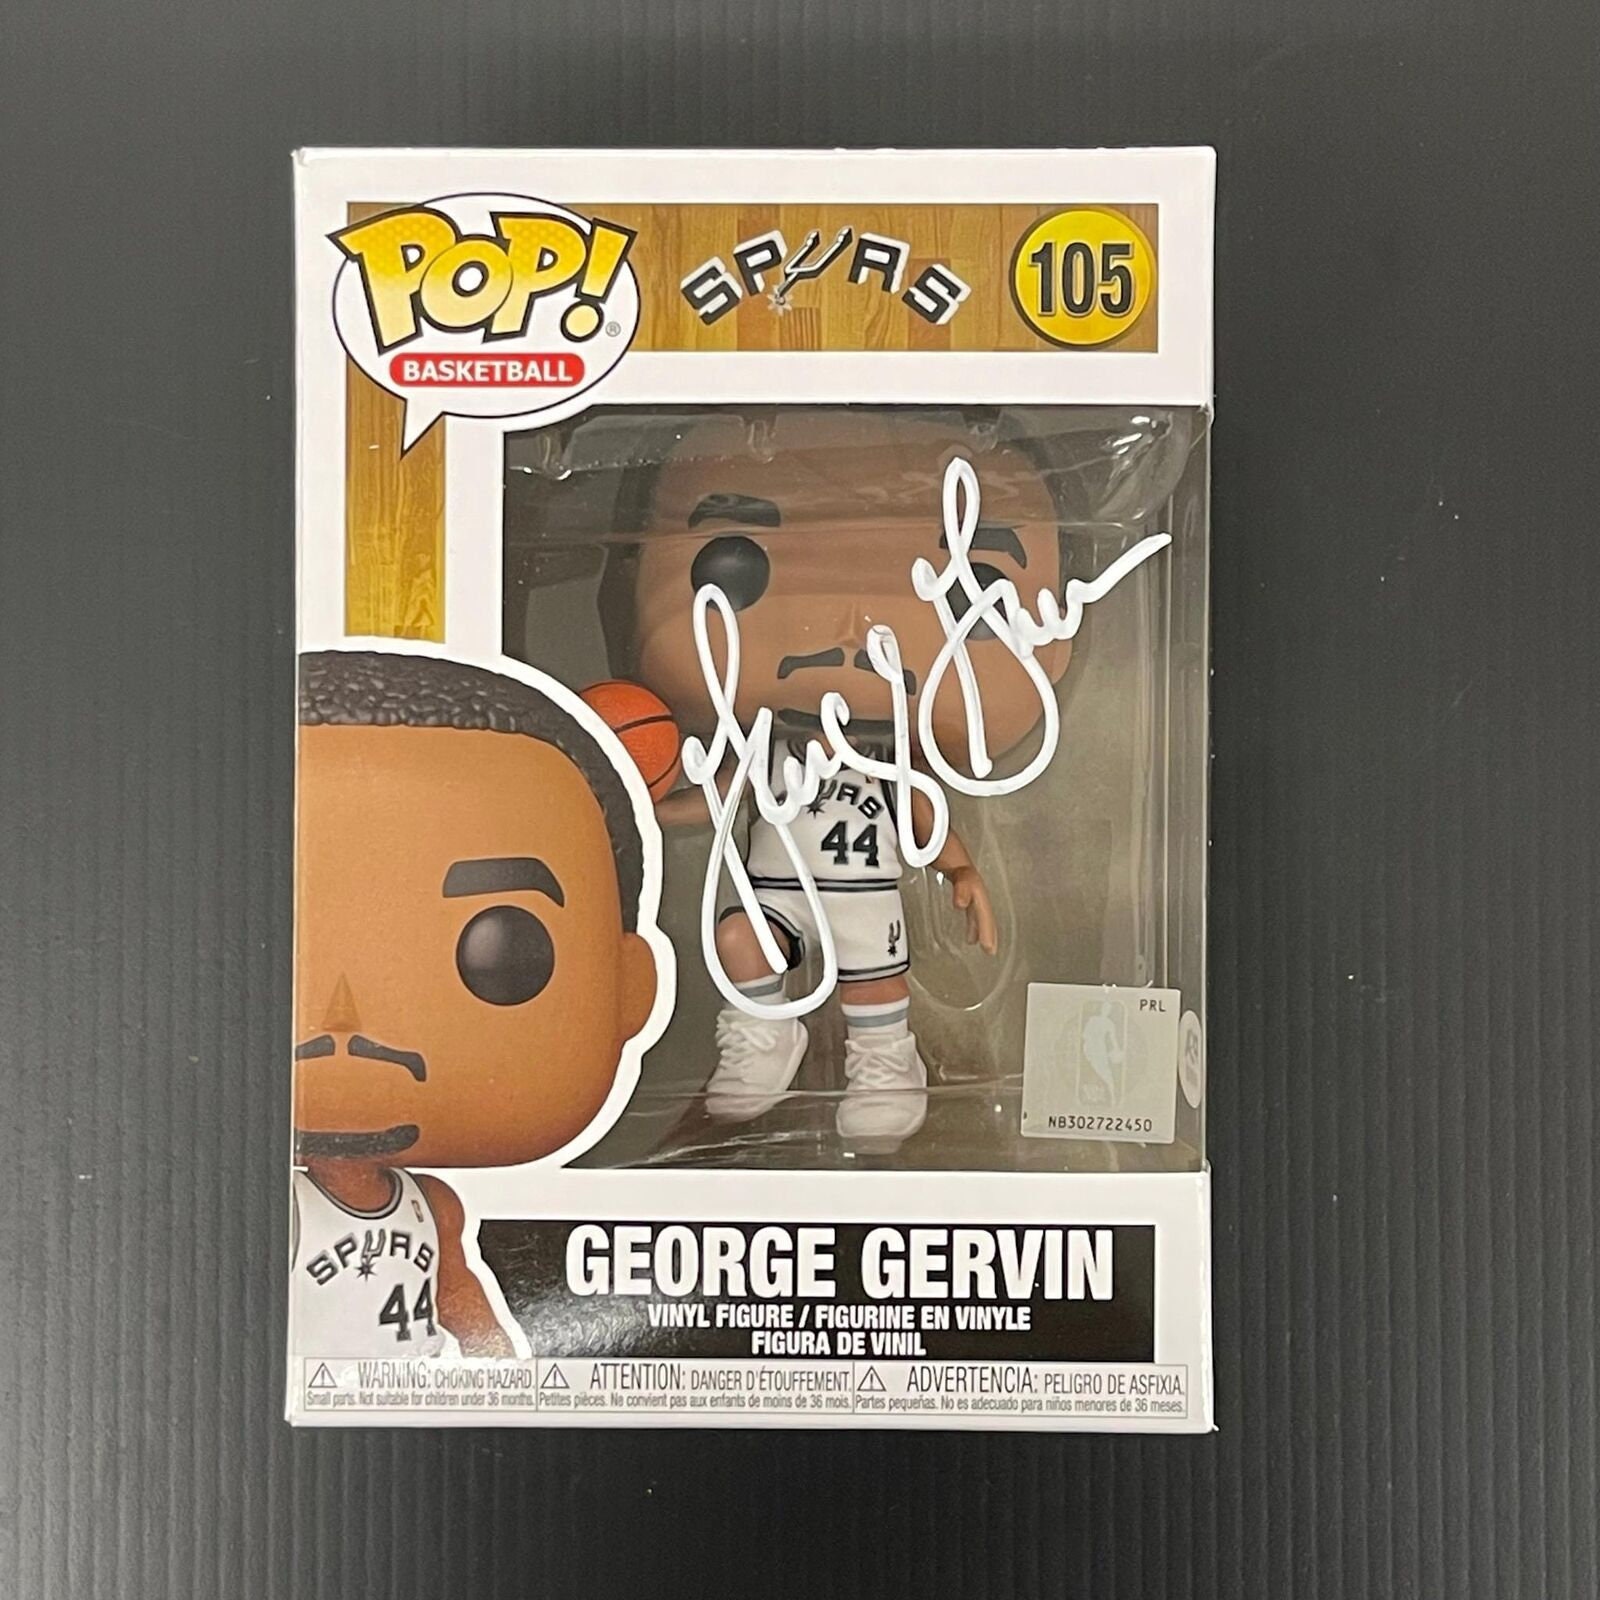 Funko Pop! NBA: Legends - George Gervin (Spurs Home)